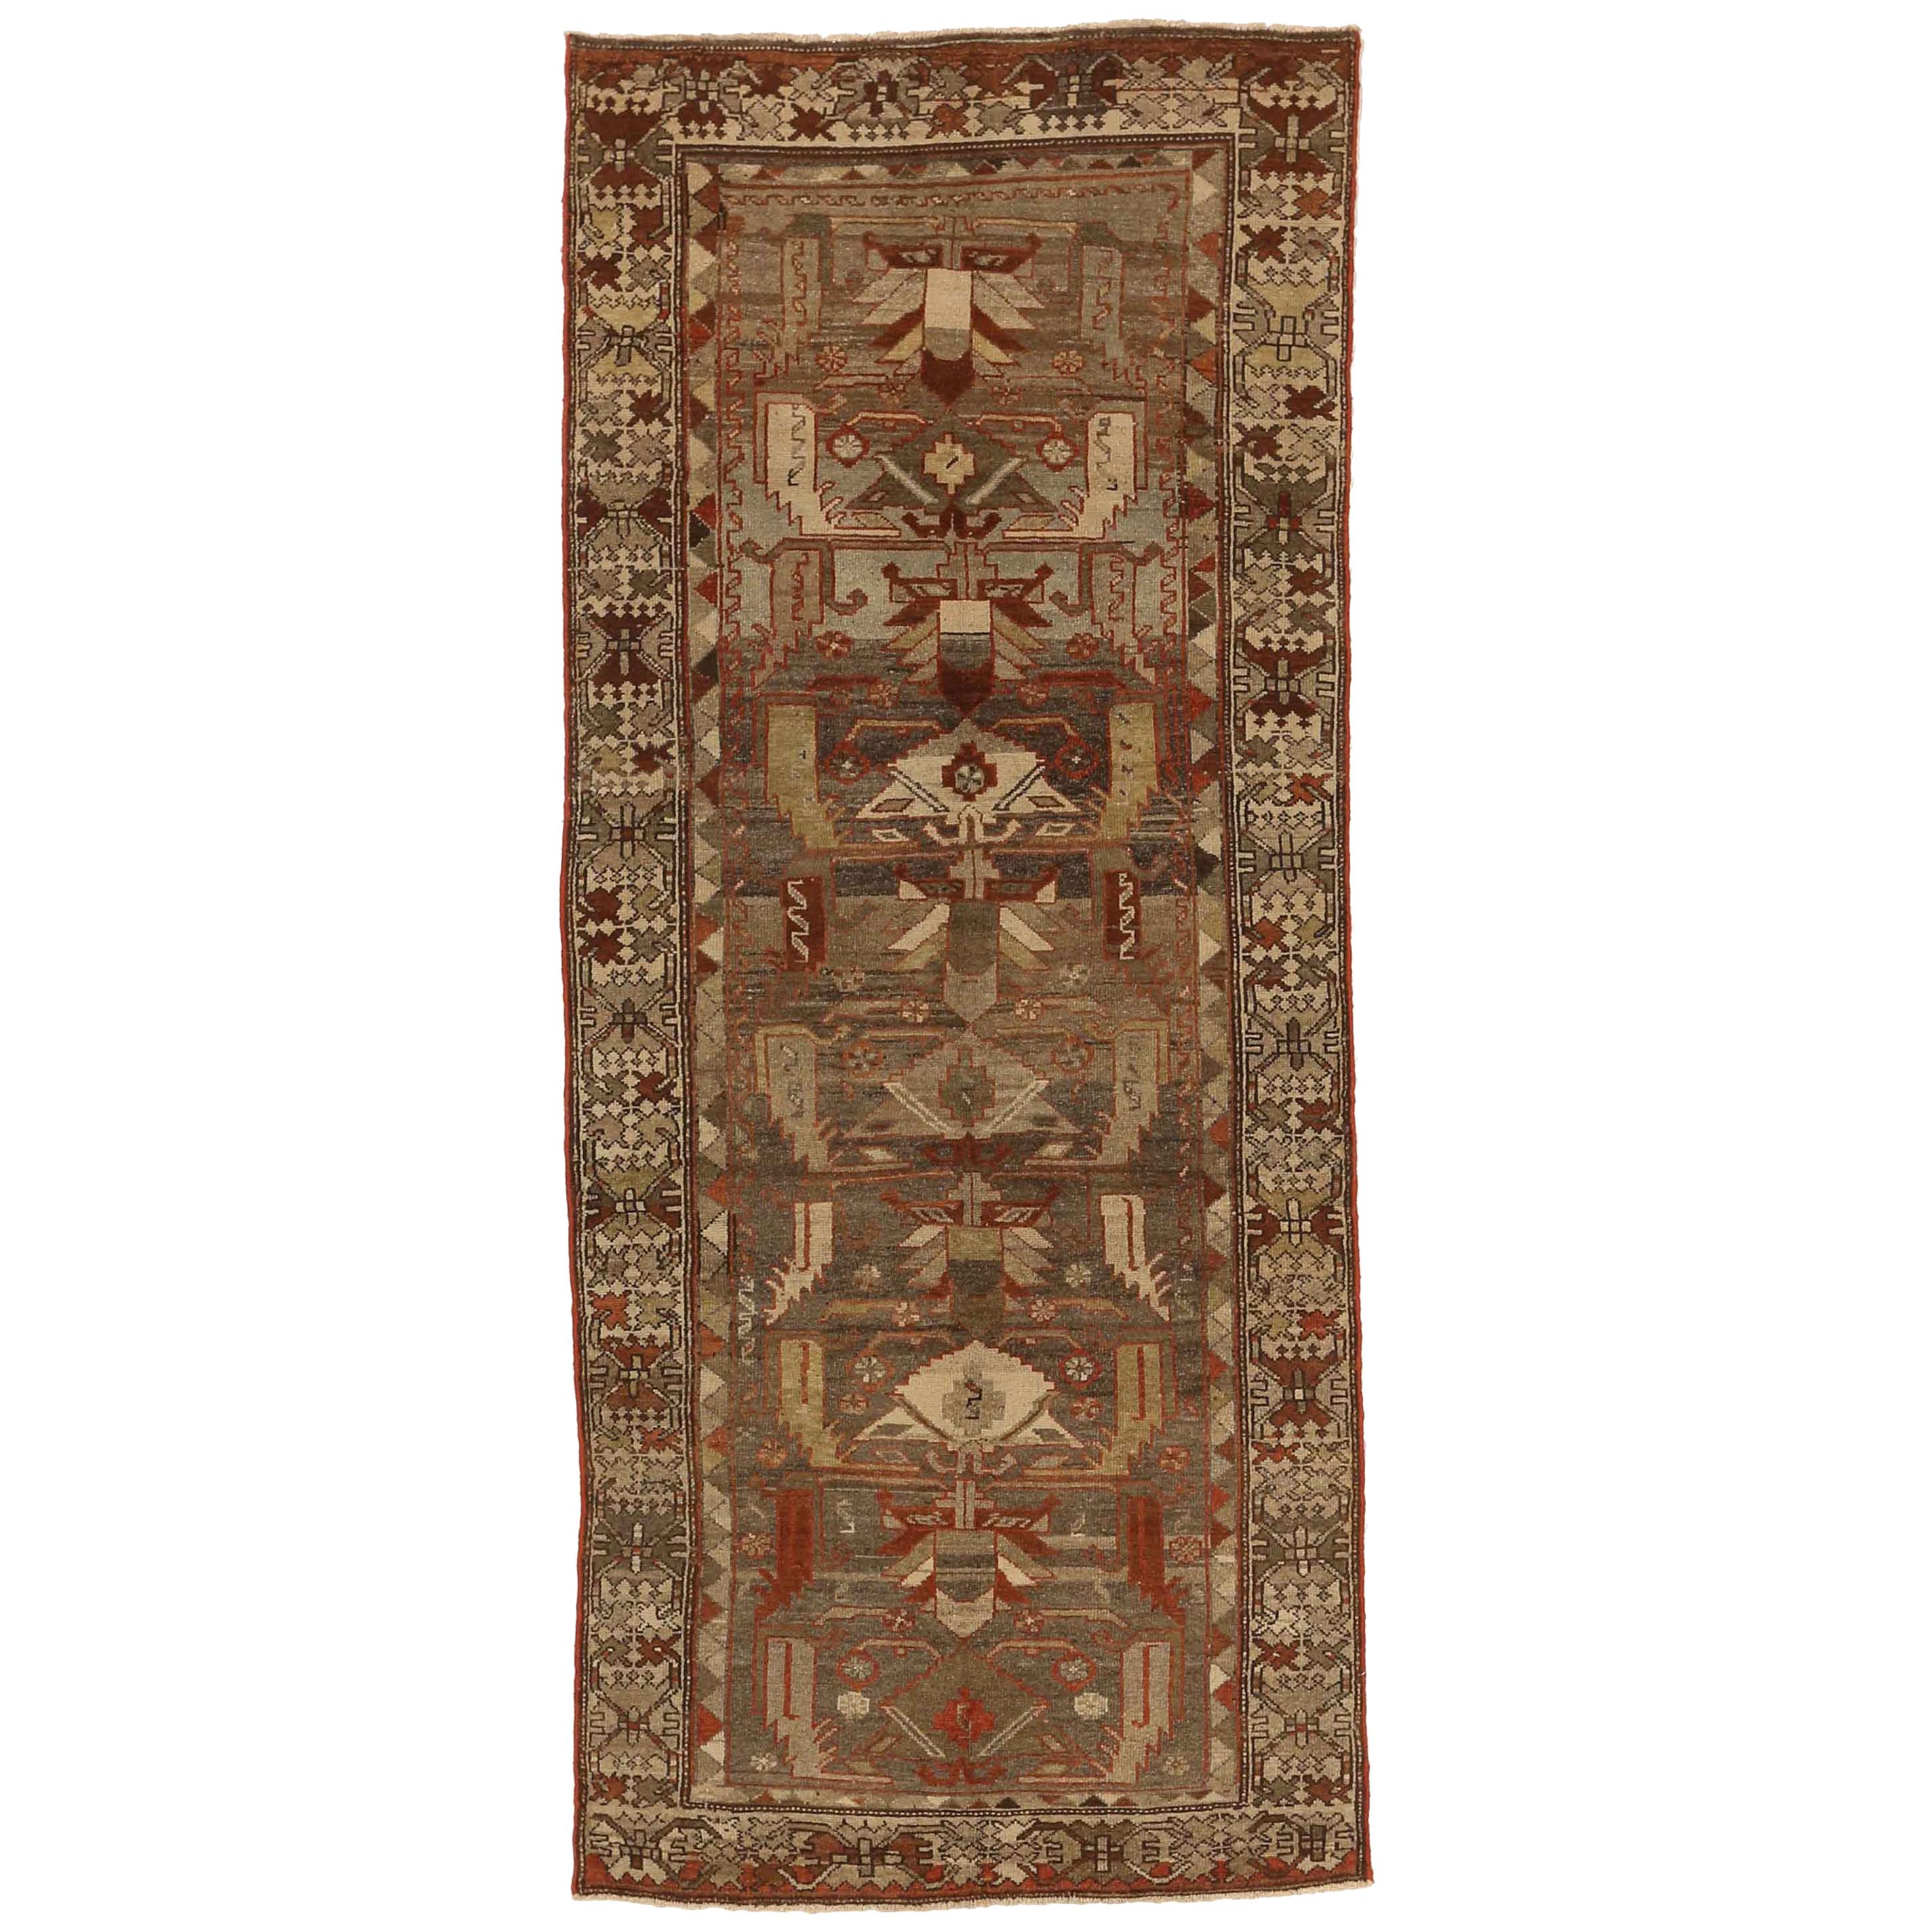 Antiker persischer Teppich im Zanjan-Stil aus den 1930er Jahren mit reichhaltigen Stammes- und geometrischen Mustern